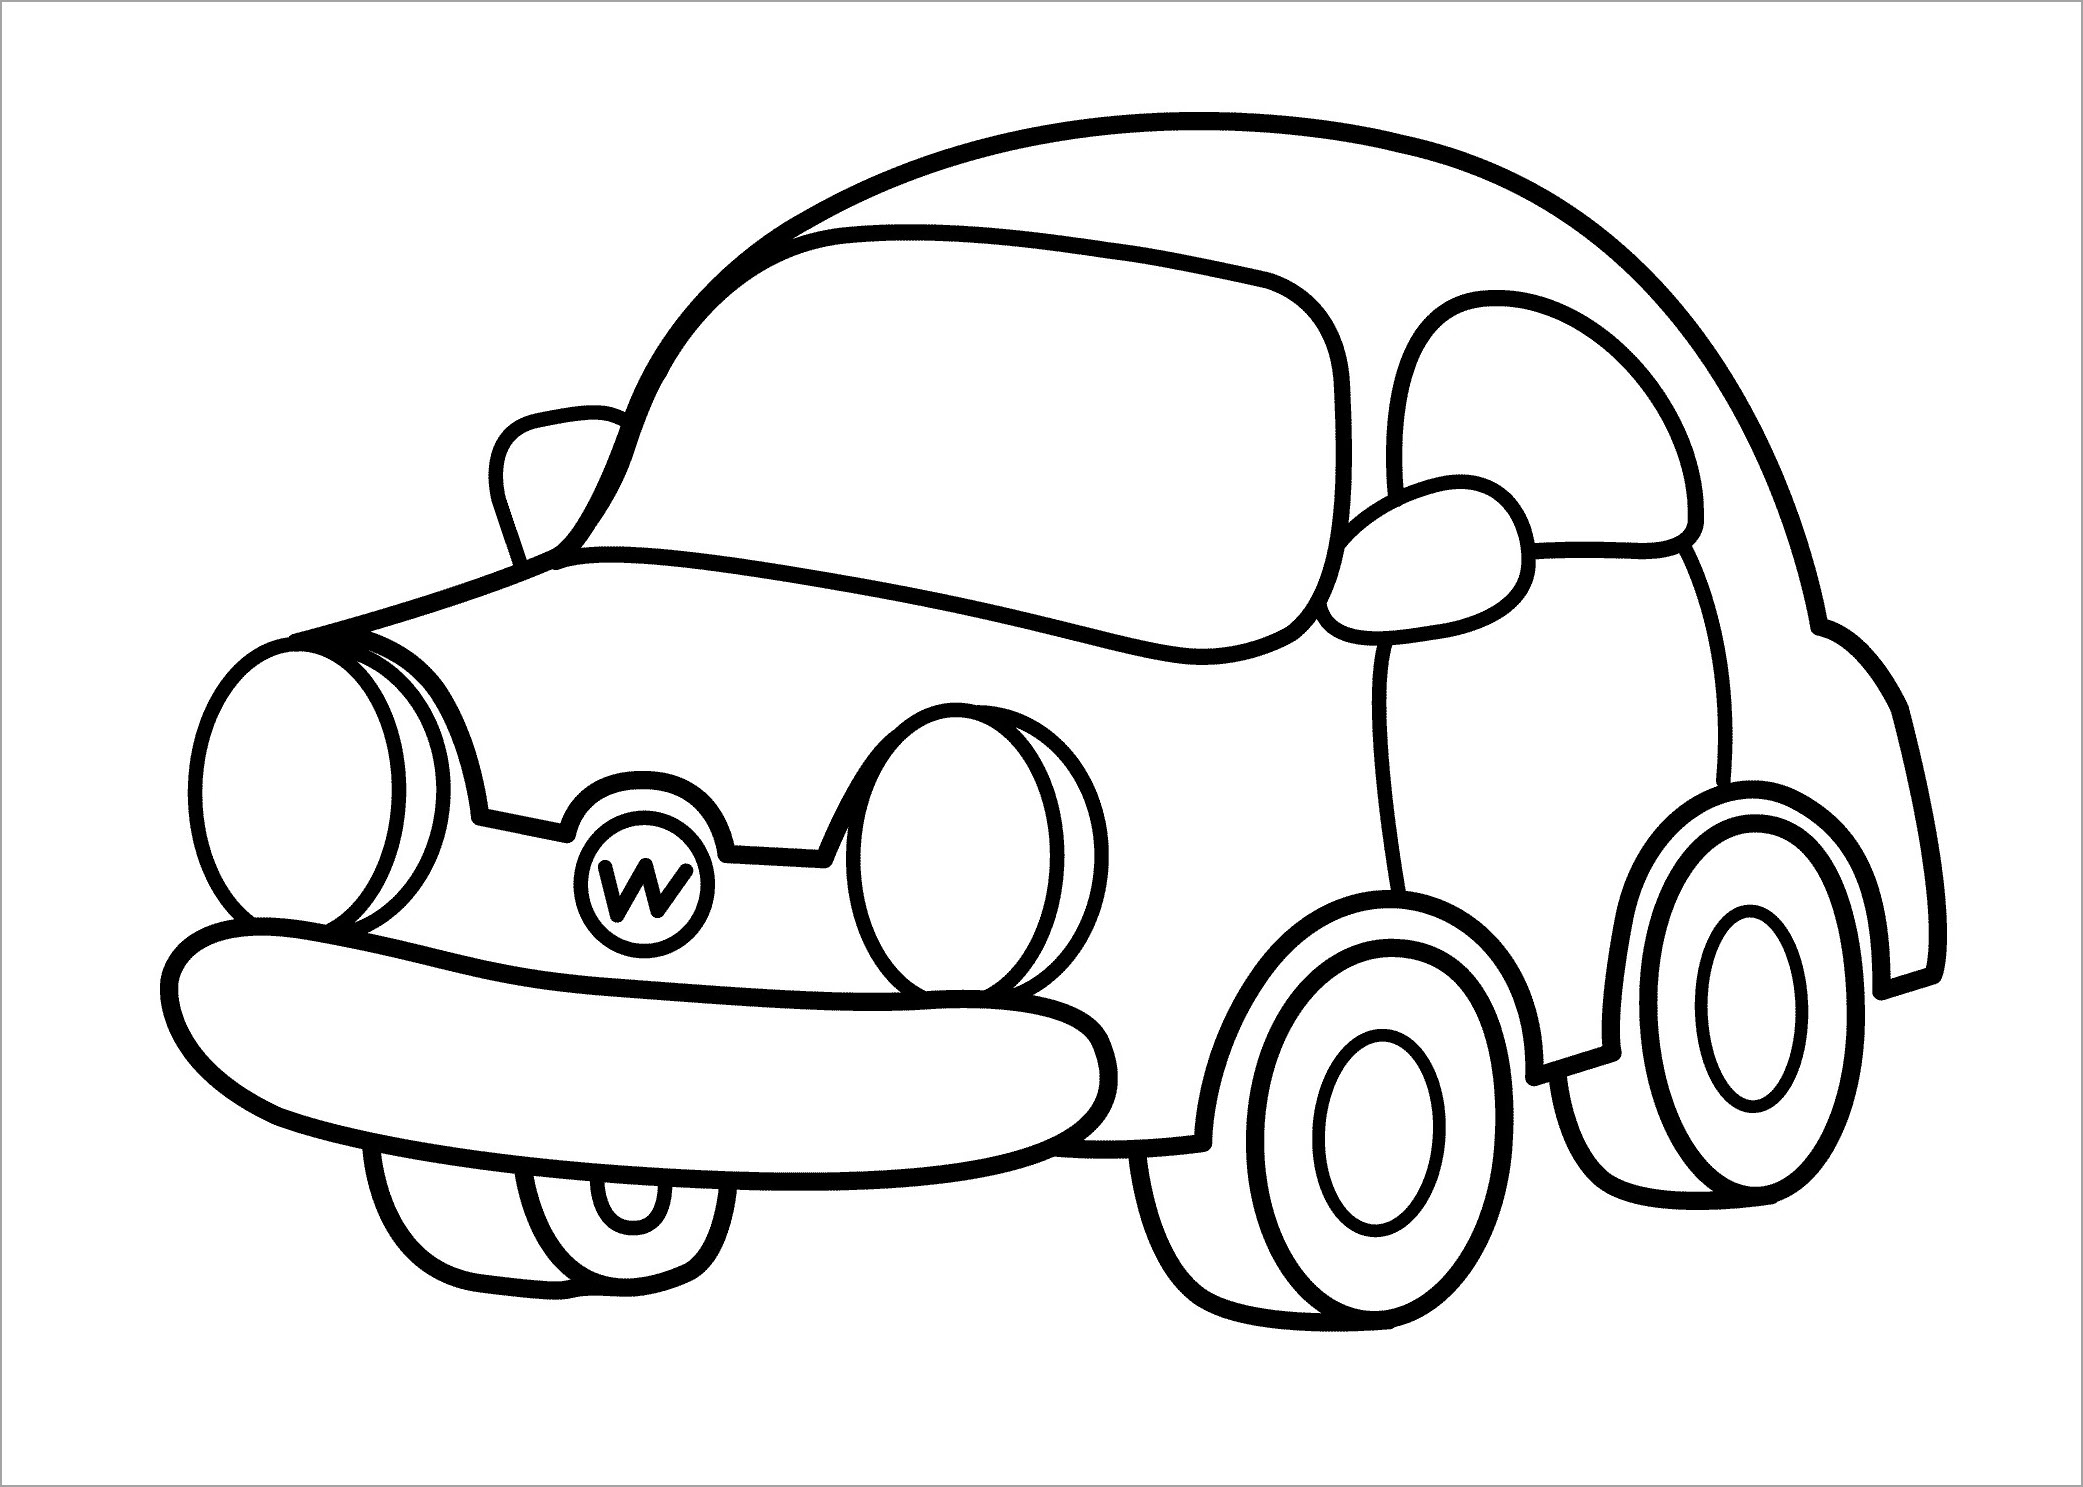 Cập nhật rộng lớn 58 về hình vẽ xe hơi tiên tiến nhất - Du học tập Akina